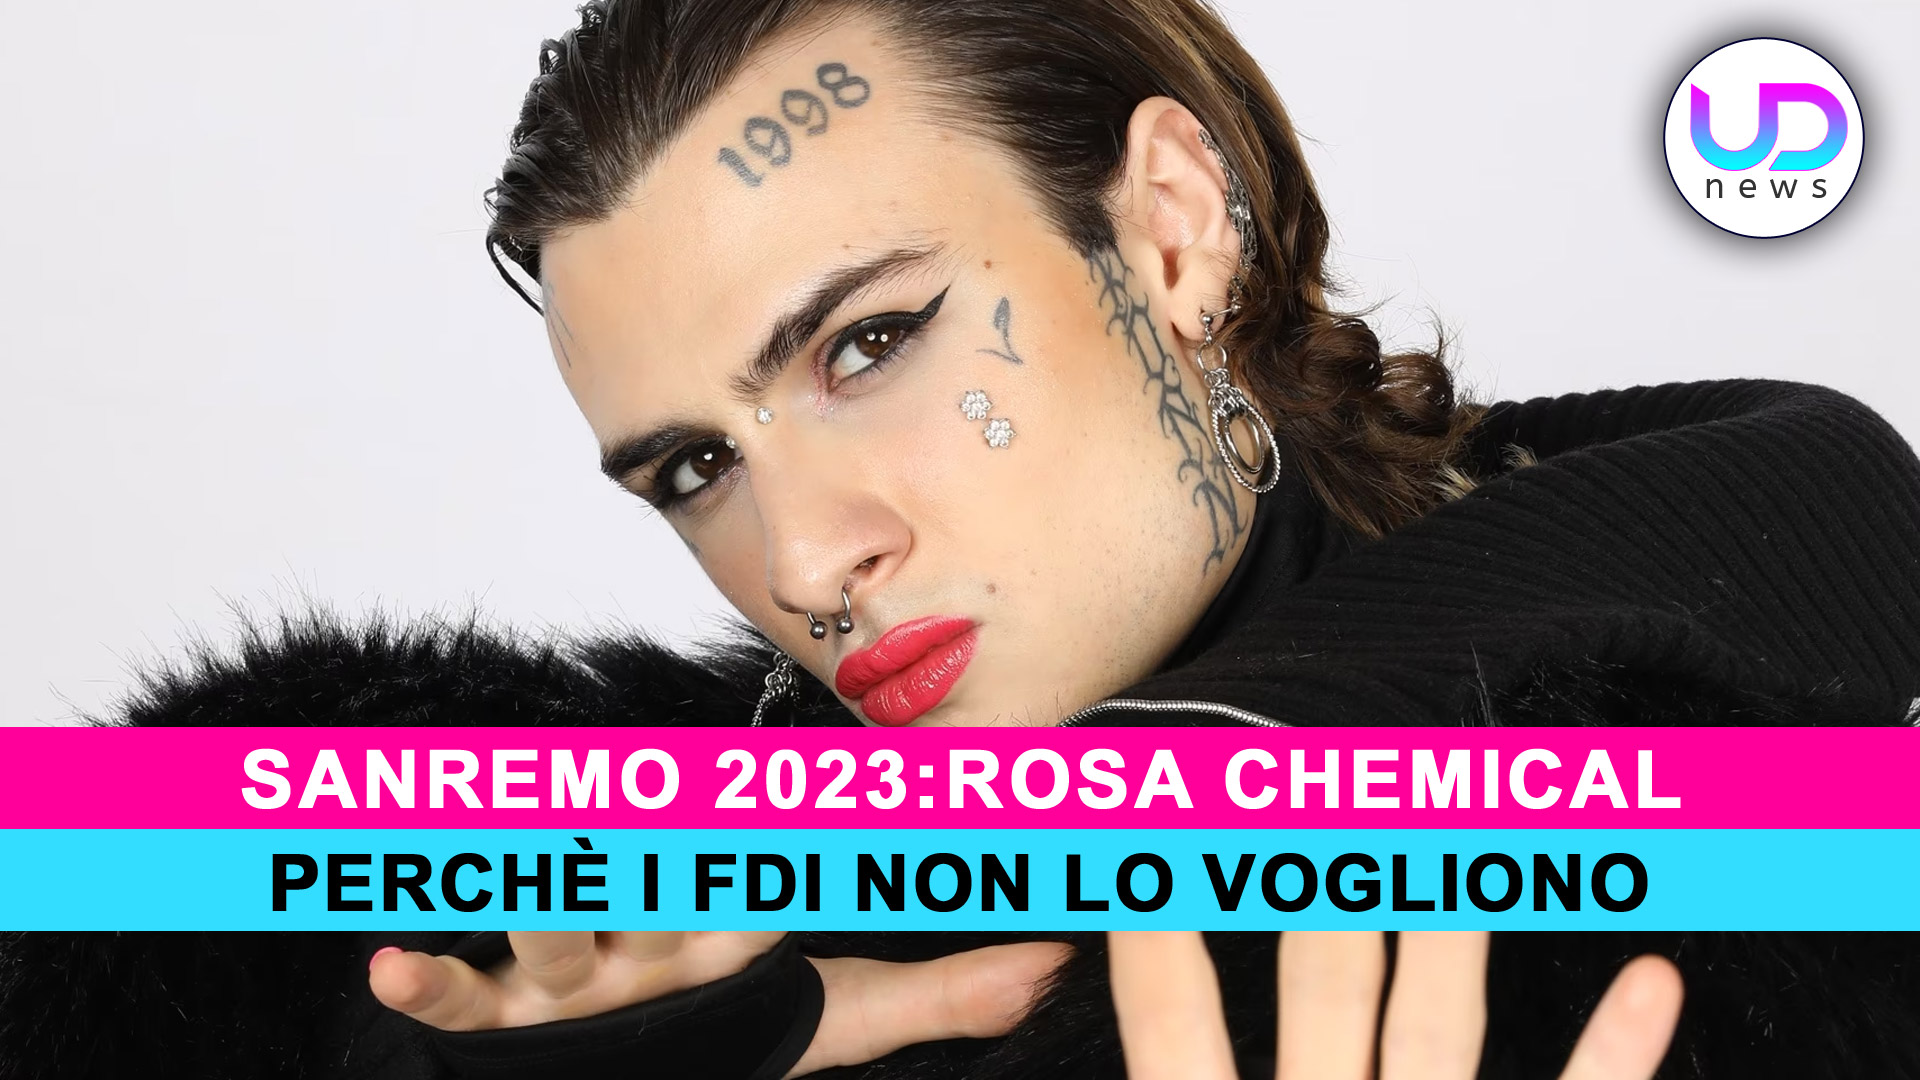 Sanremo 2023, Rosa Chemical: Perchè I Fratelli D’Italia Non Lo Vogliono!